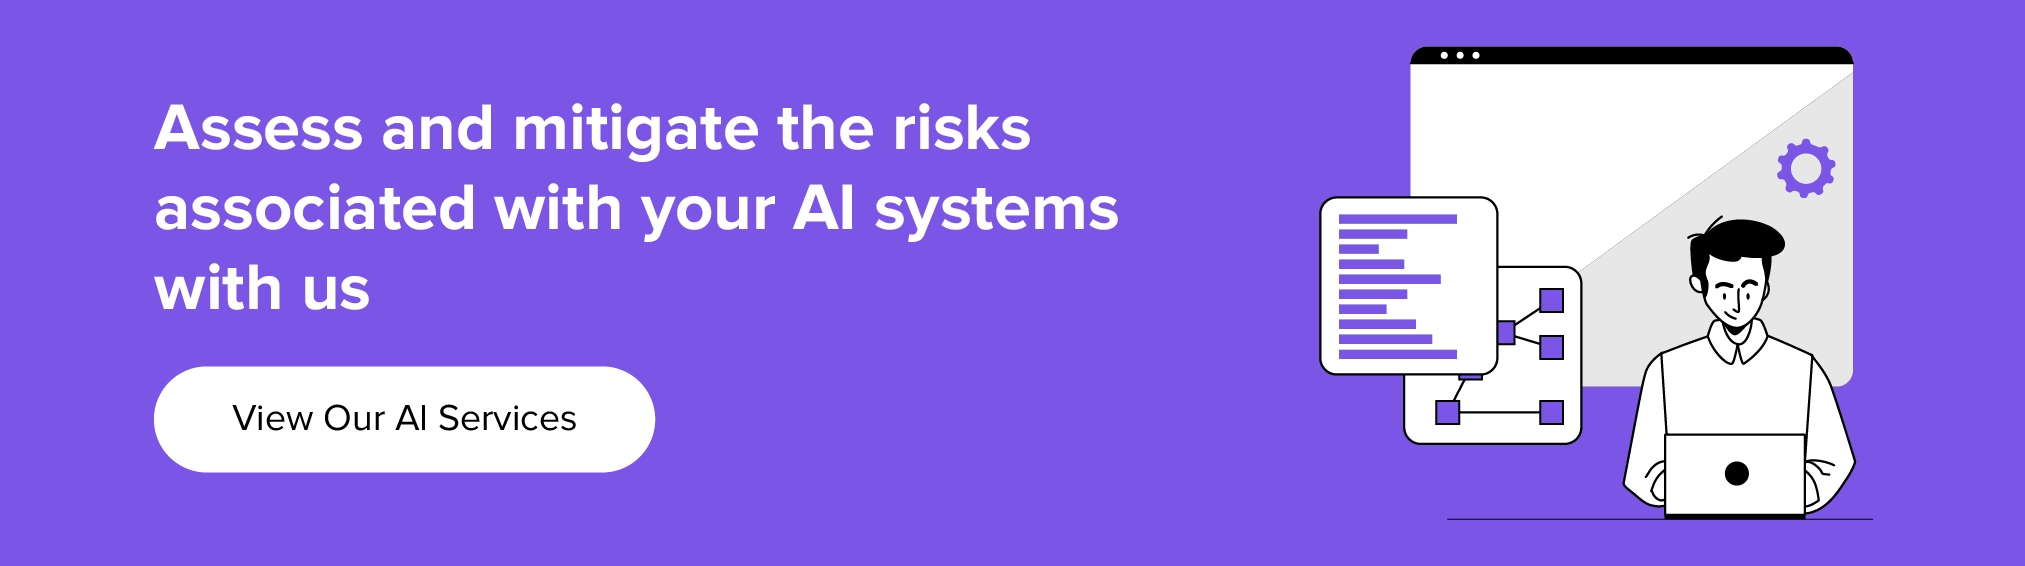 colabore conosco para avaliar e mitigar riscos associados ao seu sistema de IA